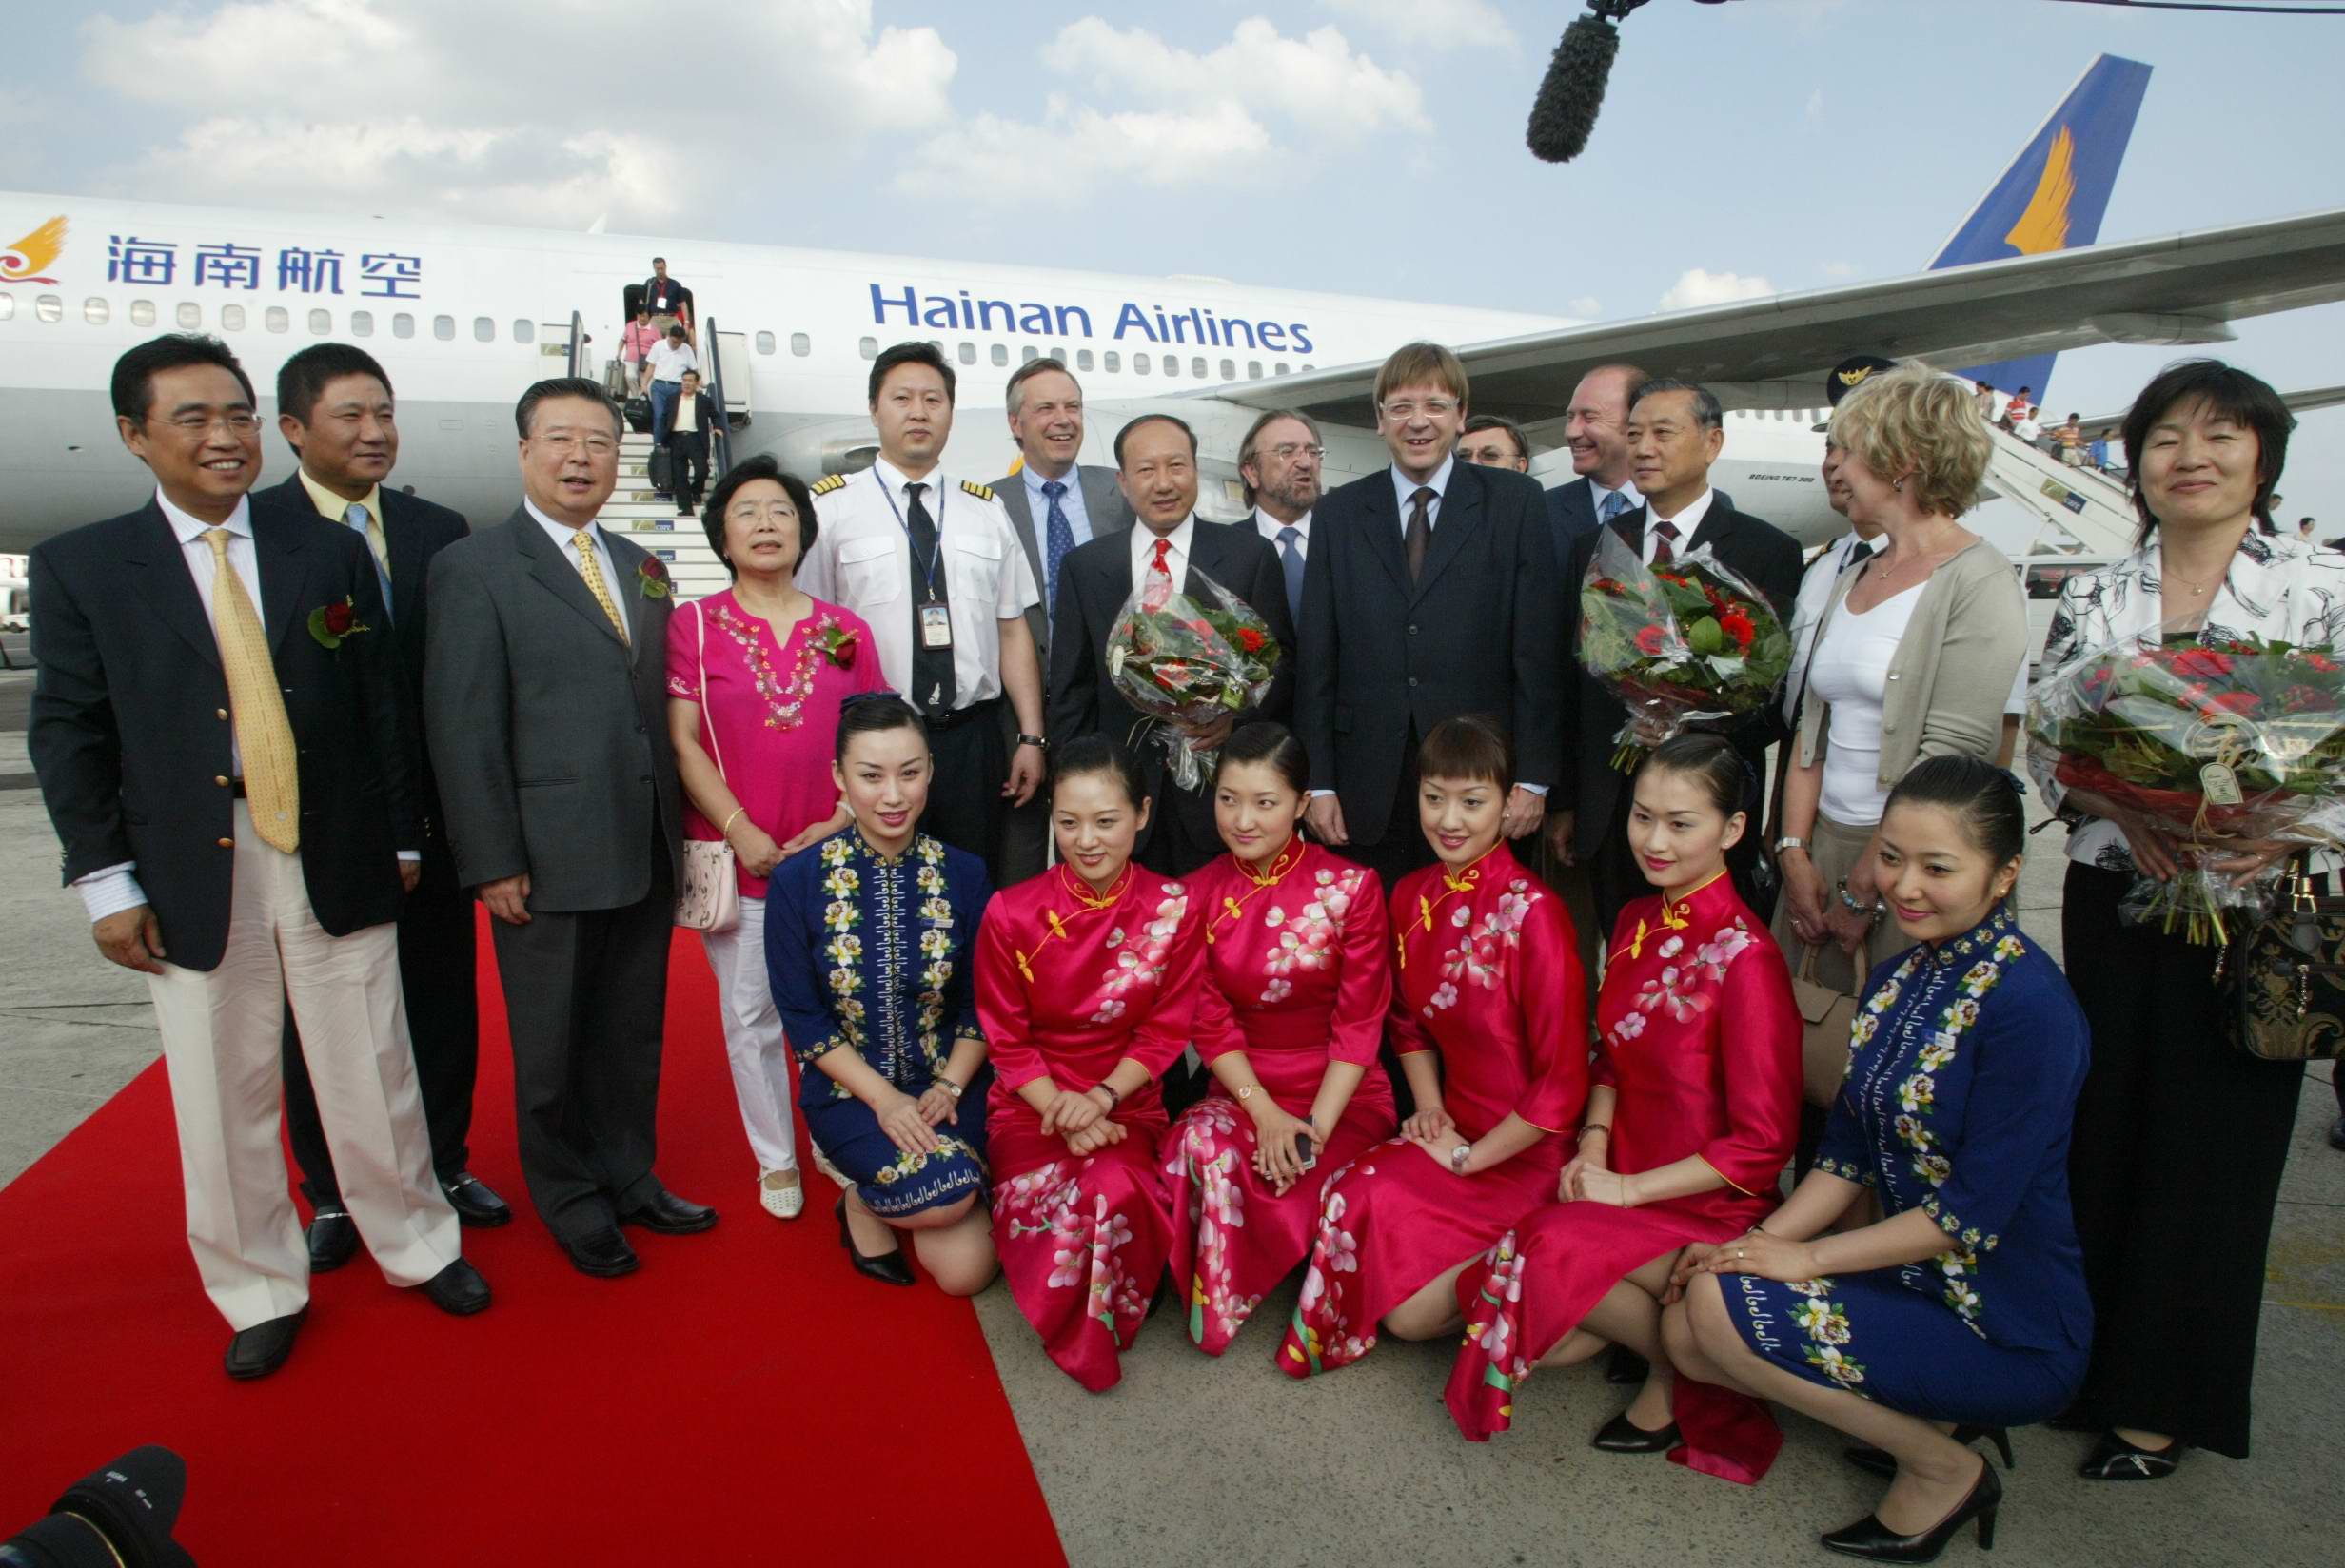 Amikor még vidámabb volt a hangulat: a Hainan Airlines Ferihegyre érkezett <br>(fotó: Hainan Airlines)